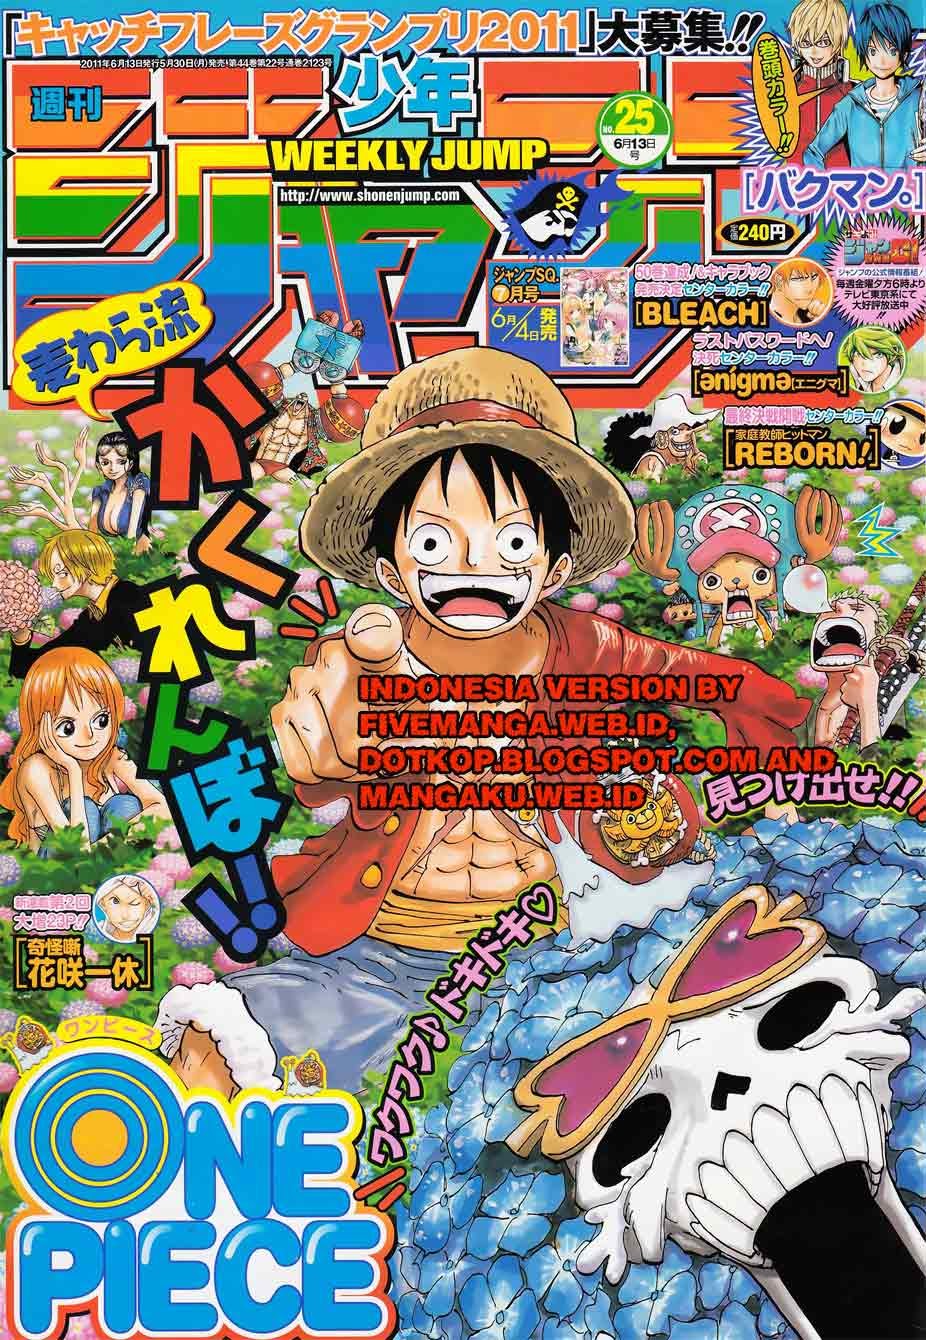 One Piece Chapter 626 – persaudaraan 3 anak neptune Image 0